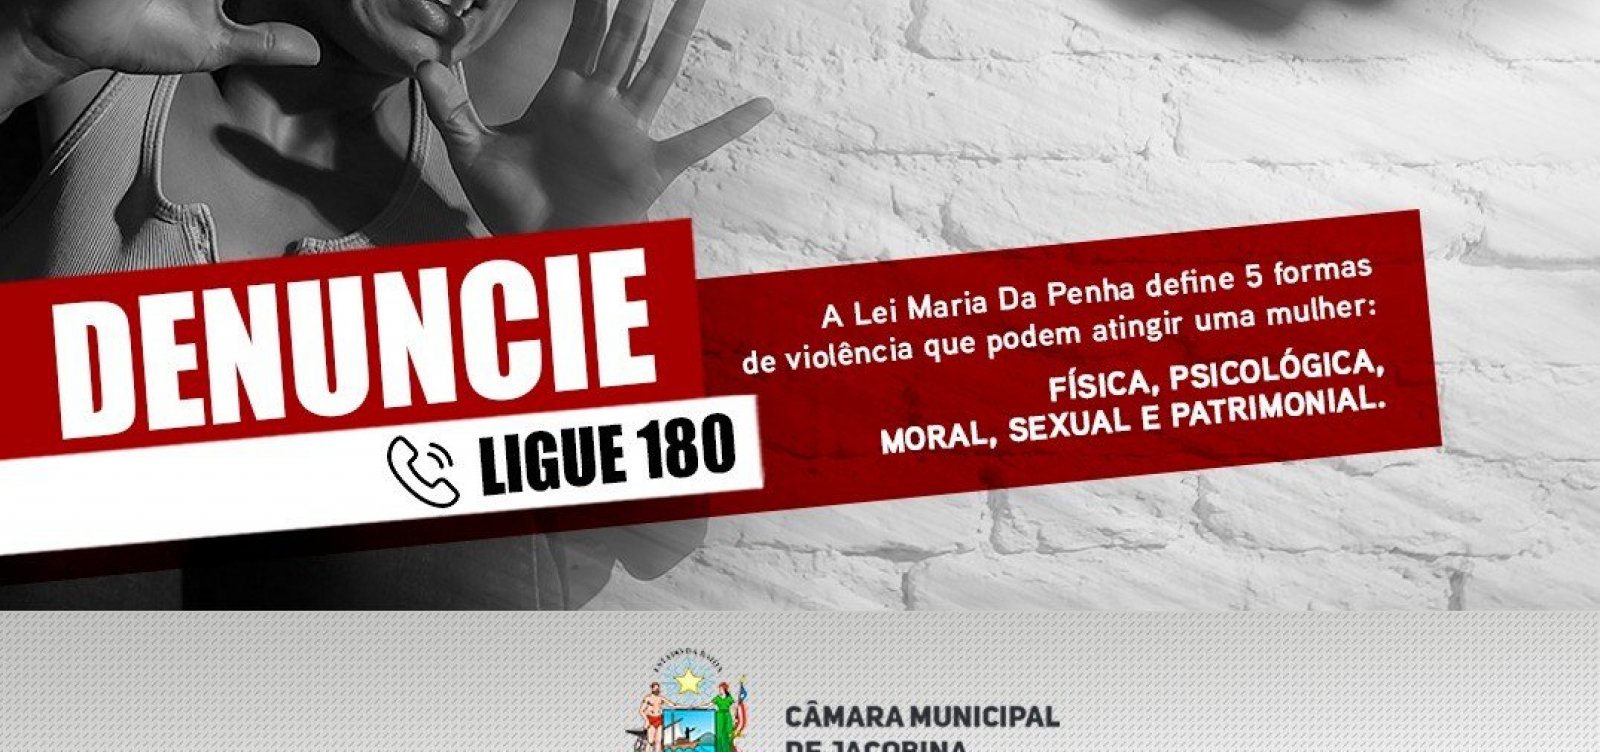 Após vereador agredir servidora, Câmara de Jacobina divulga campanha de combate à violência contra mulher 